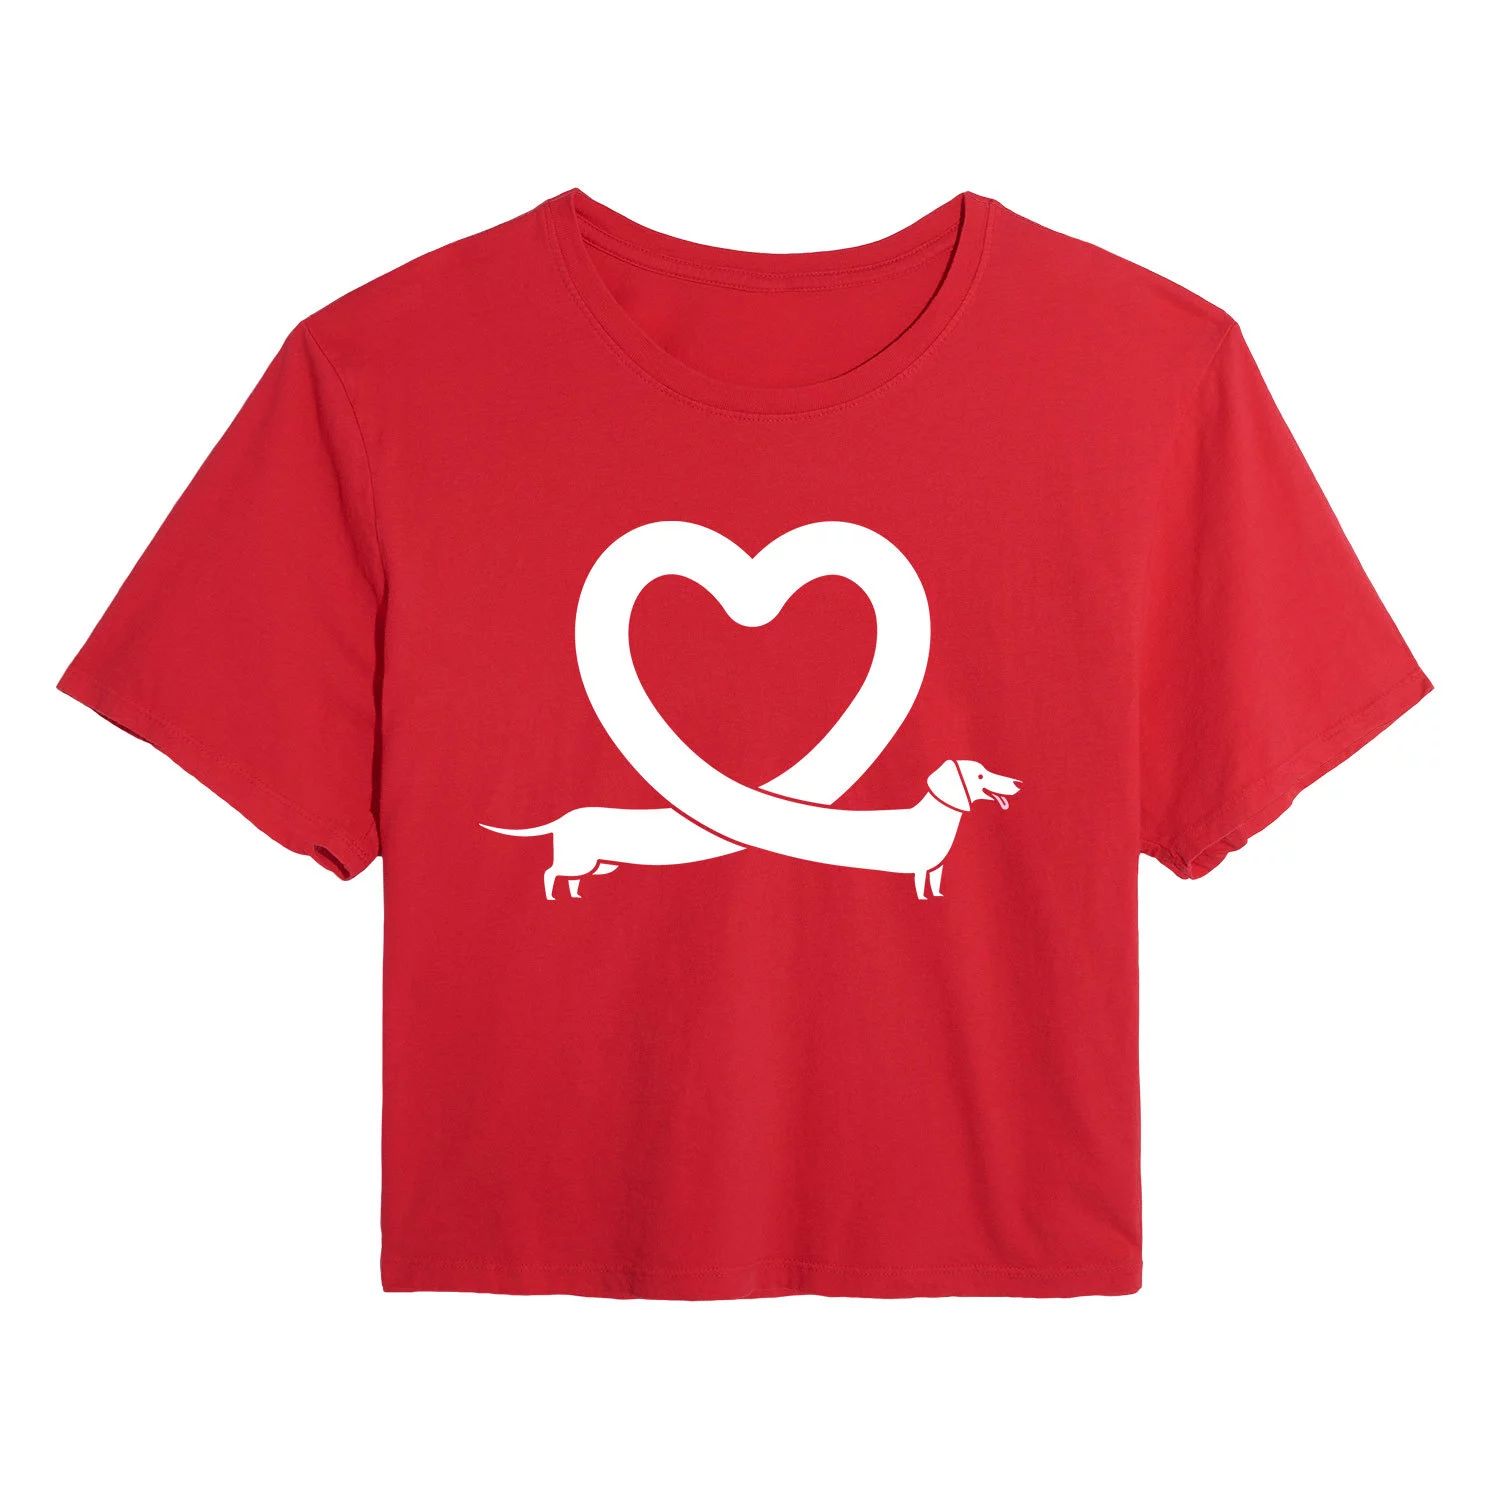 Укороченная футболка в форме сердца для юниоров с таксой Licensed Character футболка с рисунком в форме сердца с изображением цветов для юниоров licensed character серый